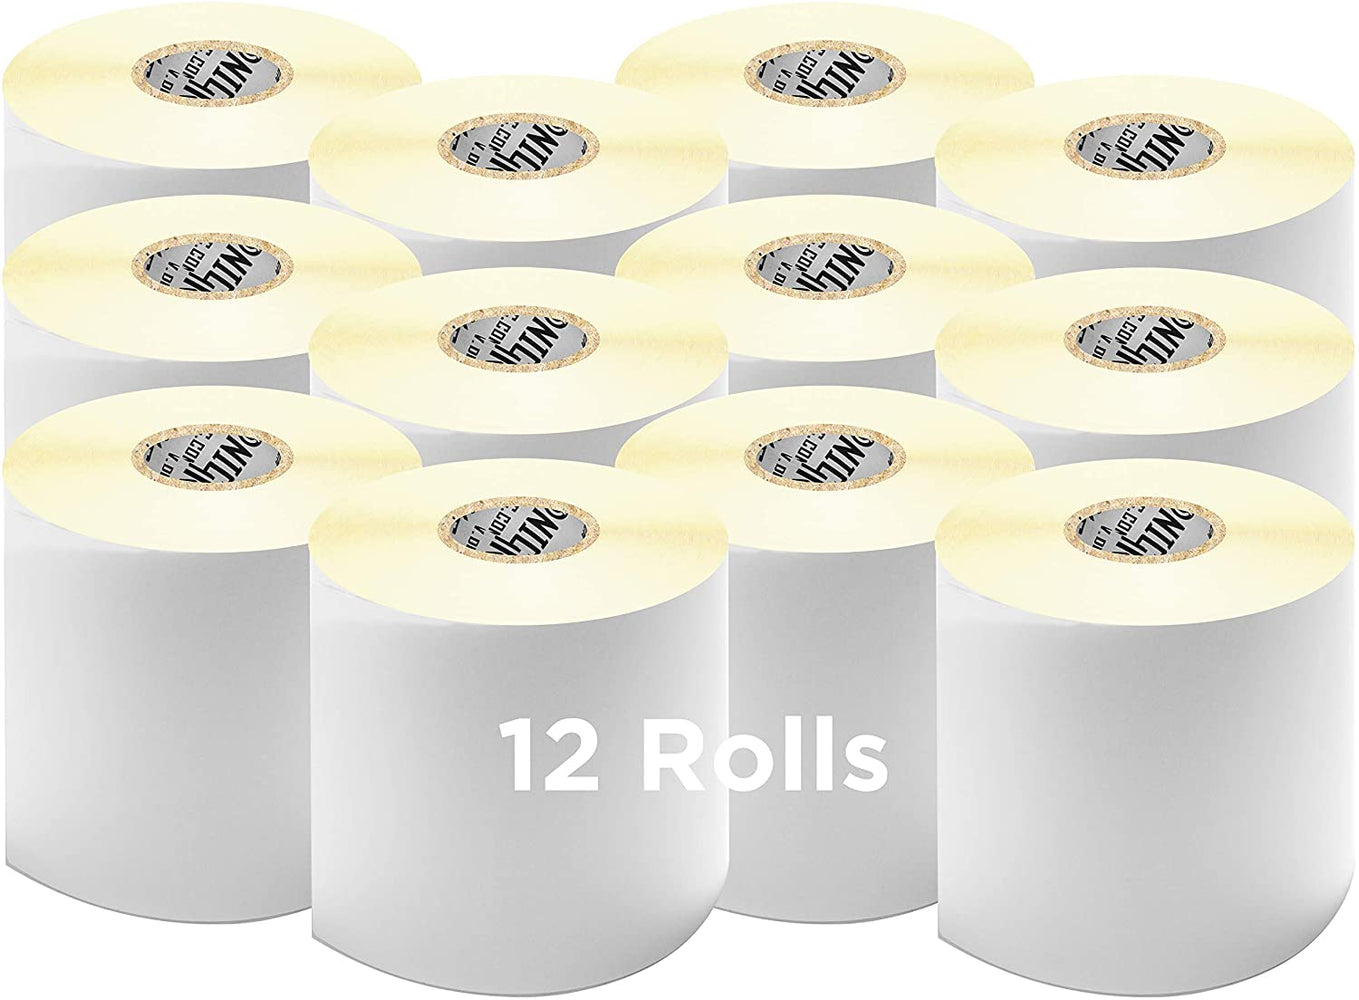 Etichette adesive permanenti multifunzione TAK-TO - 27 x 15 mm - Fogli DIN  A5 - 350 etichette - Riop